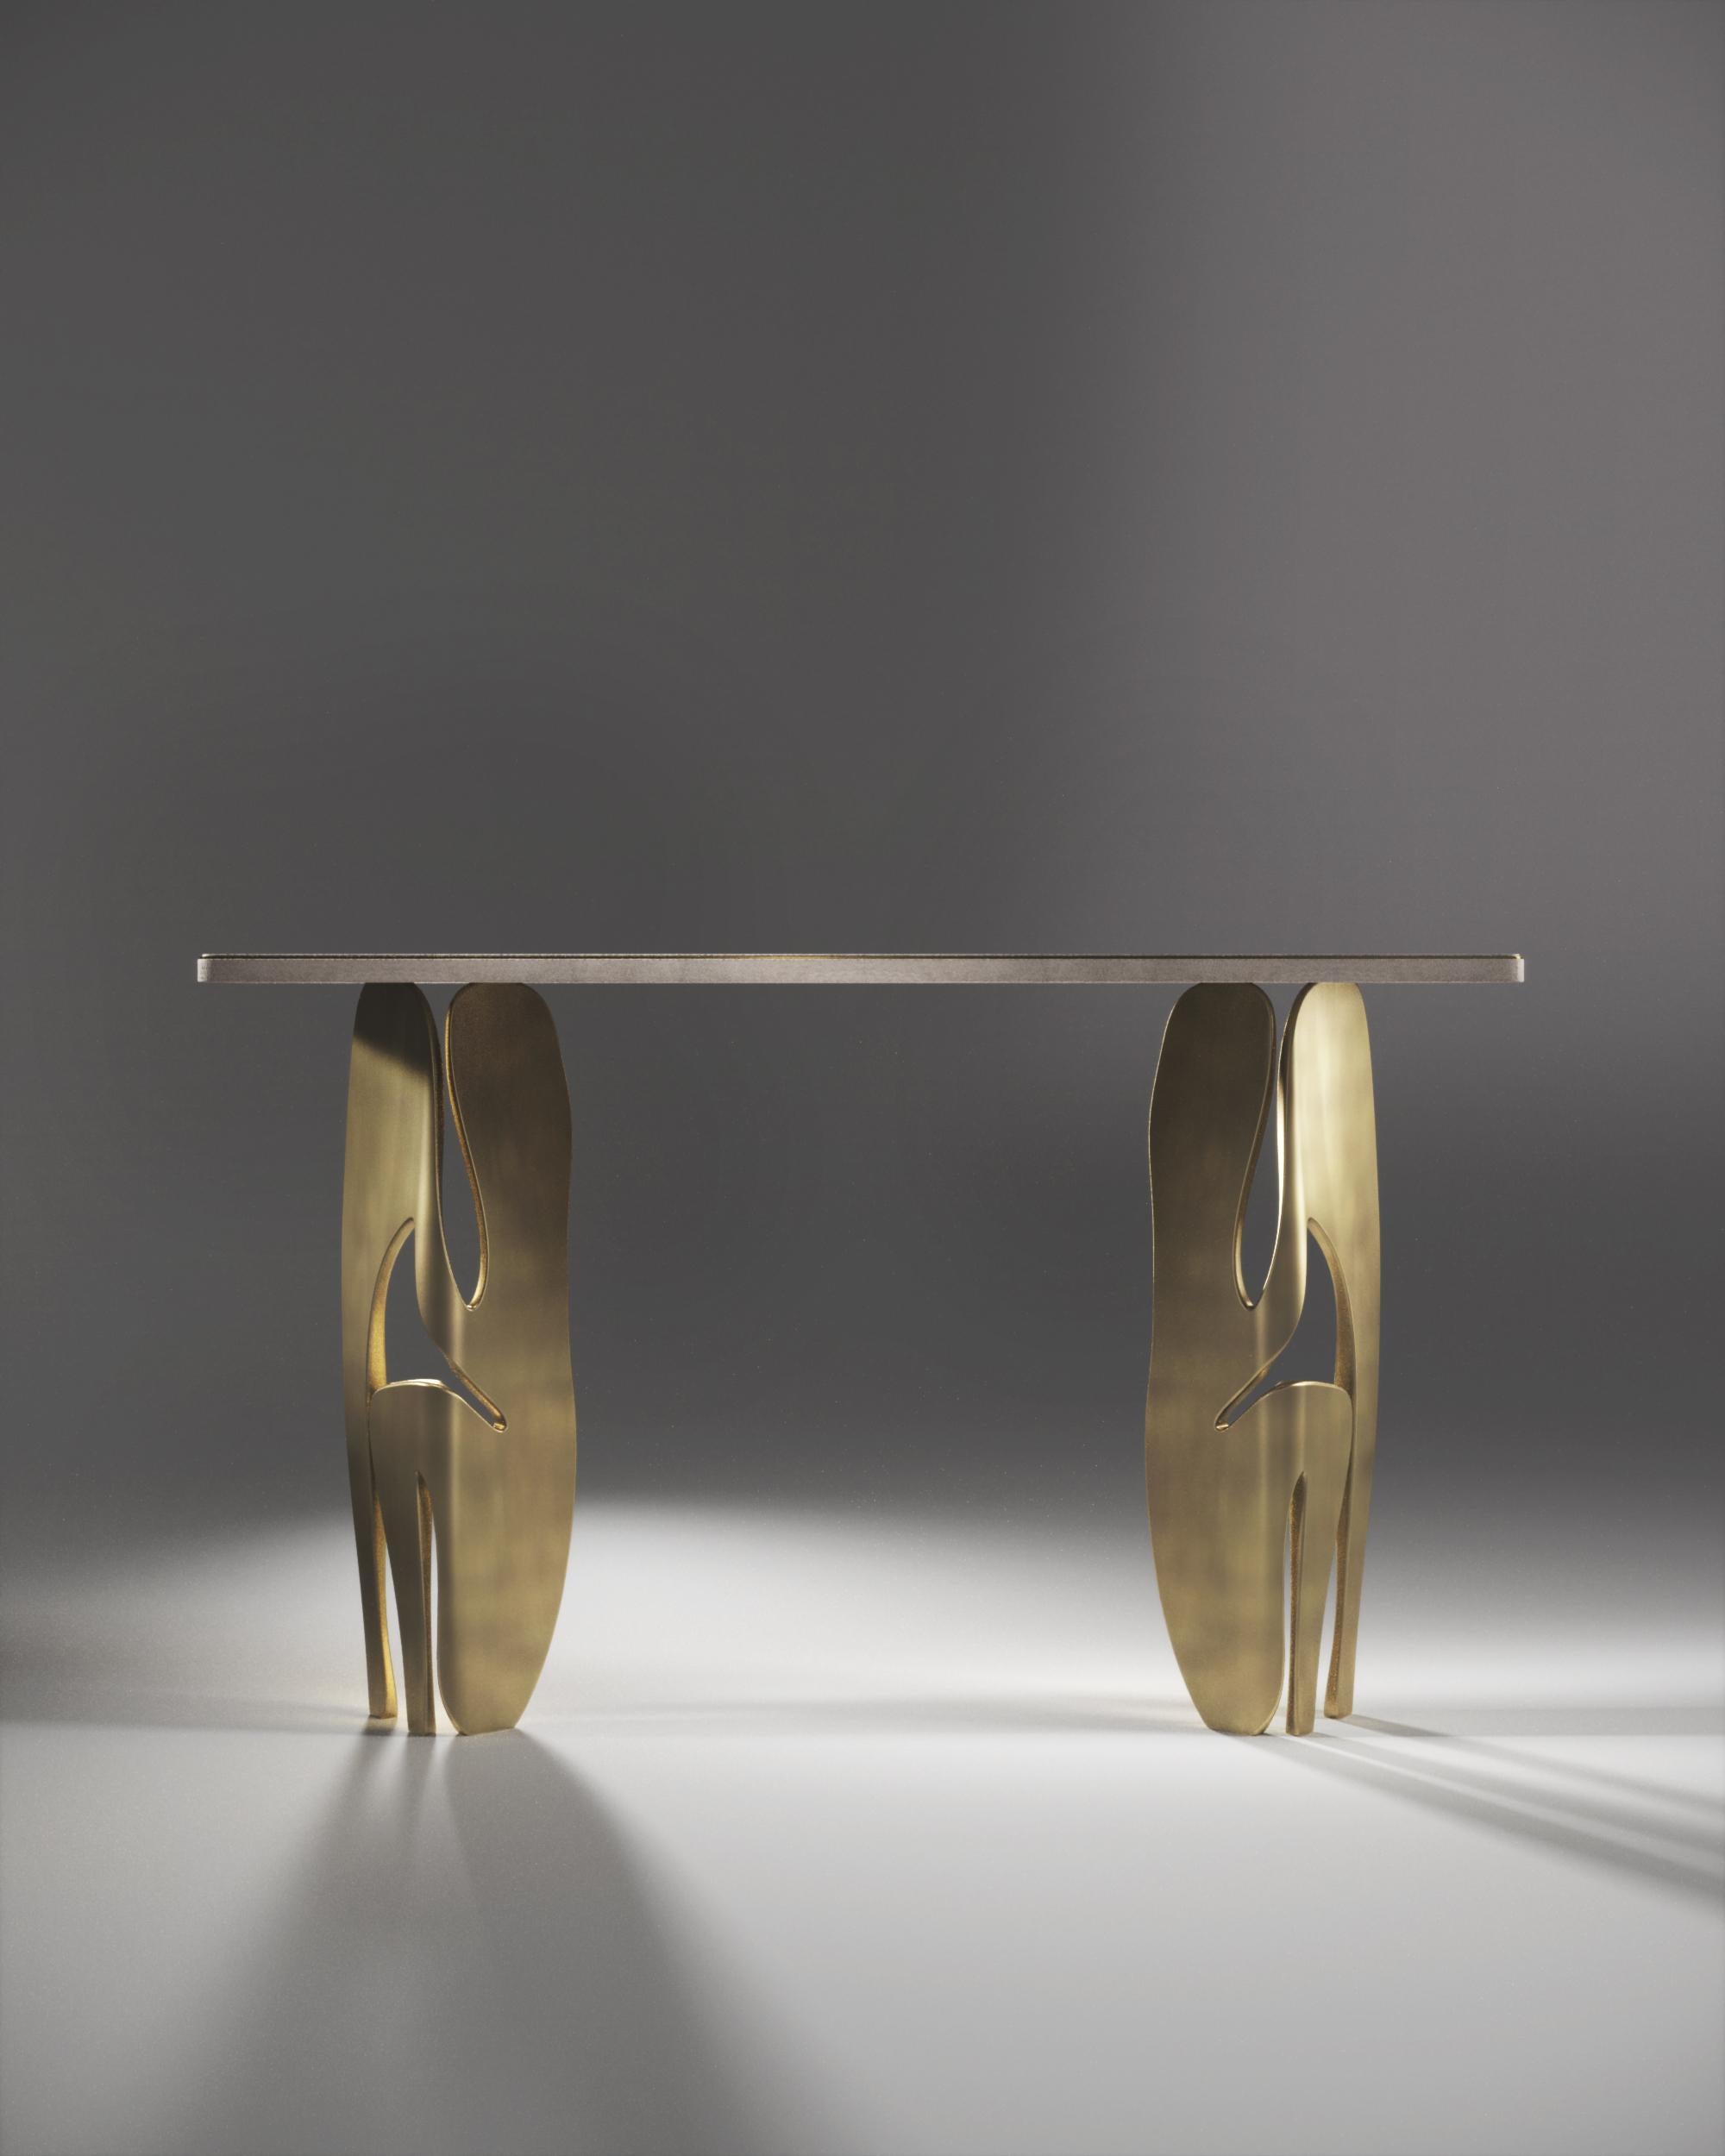 La console Metropolis II de R&Y Augousti est une pièce maîtresse. Le plateau incrusté de galuchat crème repose sur une paire de pieds sculpturaux spectaculaires en laiton bronze-patina, mettant en valeur l'incroyable travail artisanal de la marque.